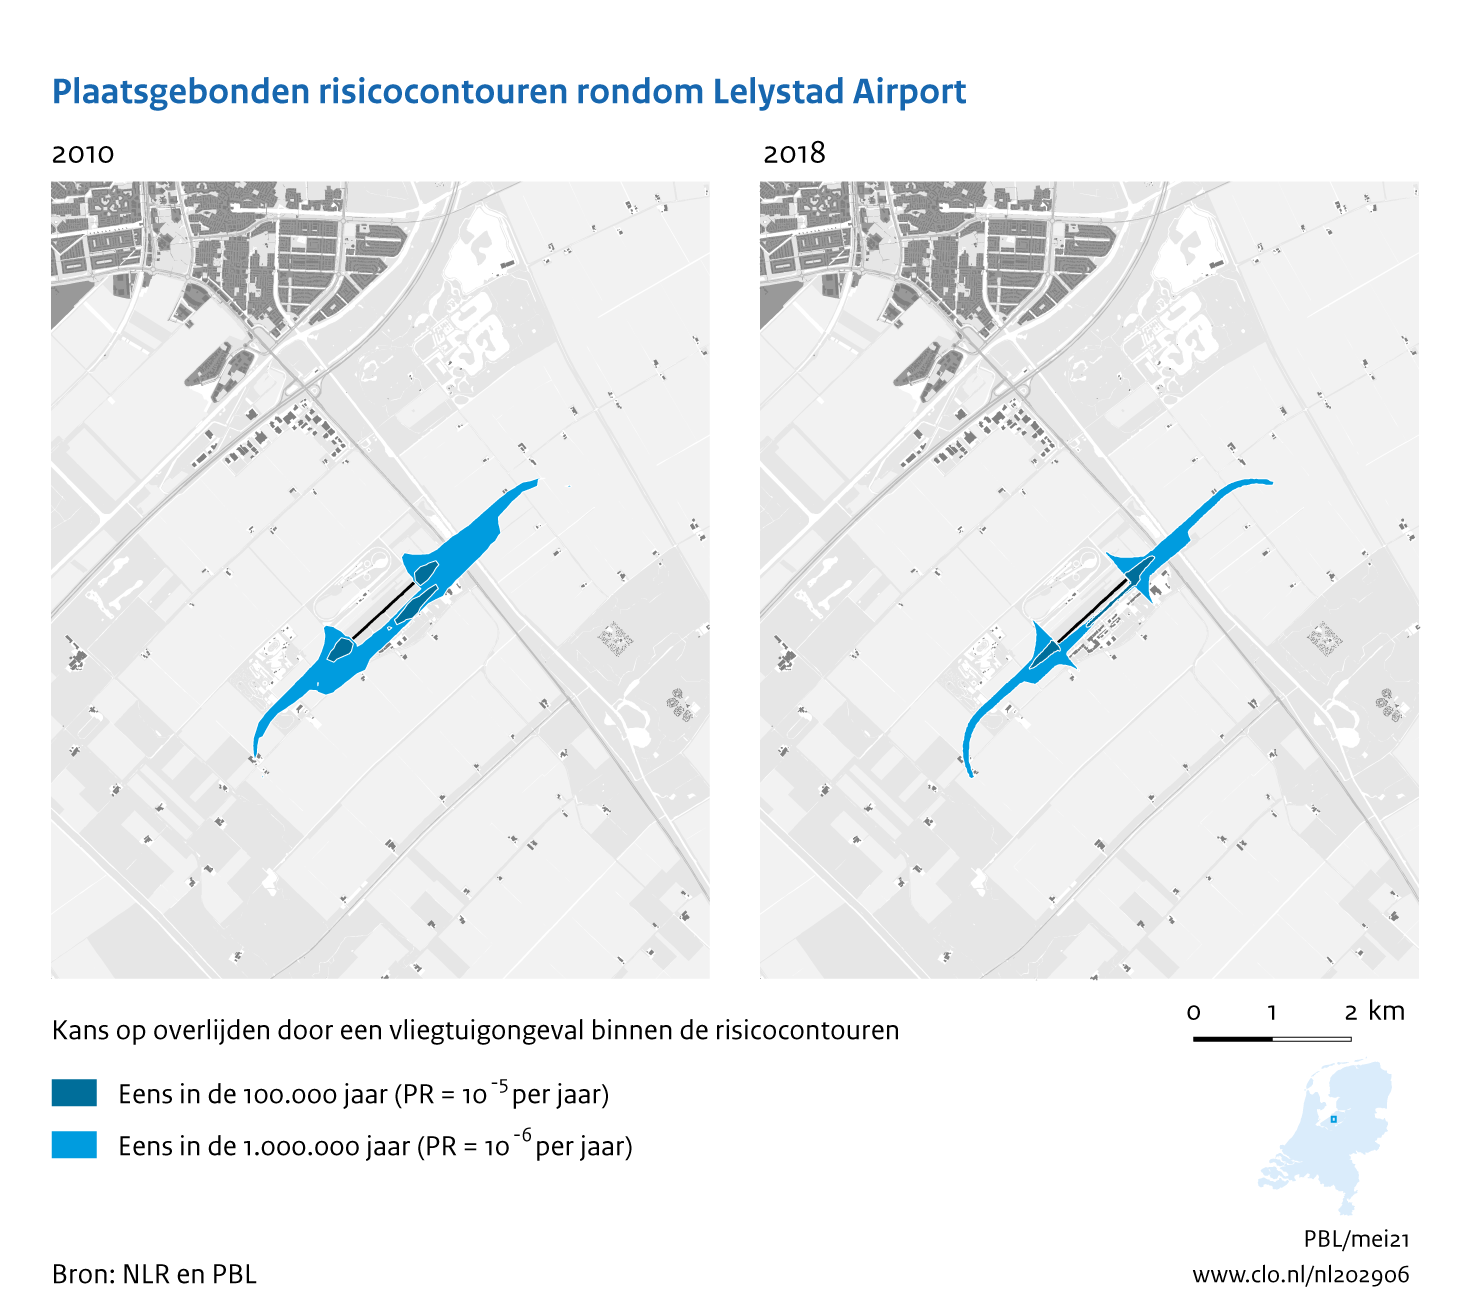 Figuur Plaatsgebonden risicocontouren rondom Lelystad Airport, 2010-2018. In de rest van de tekst wordt deze figuur uitgebreider uitgelegd.